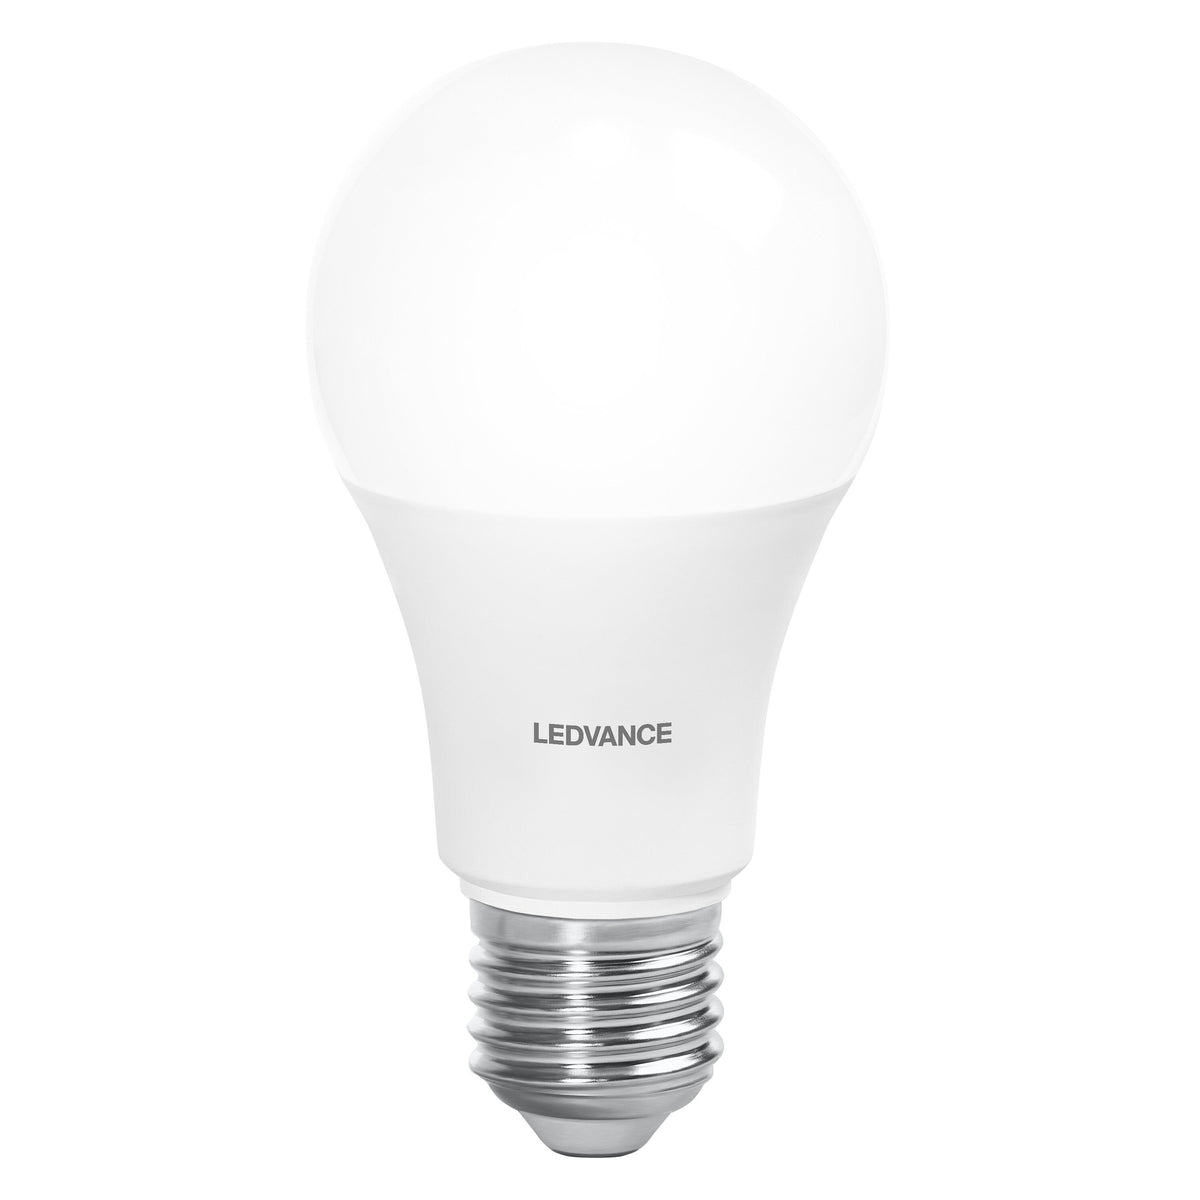 Lampada LED LEDVANCE SUN@HOME, aspetto bianco gelo, 12W, 1055lm